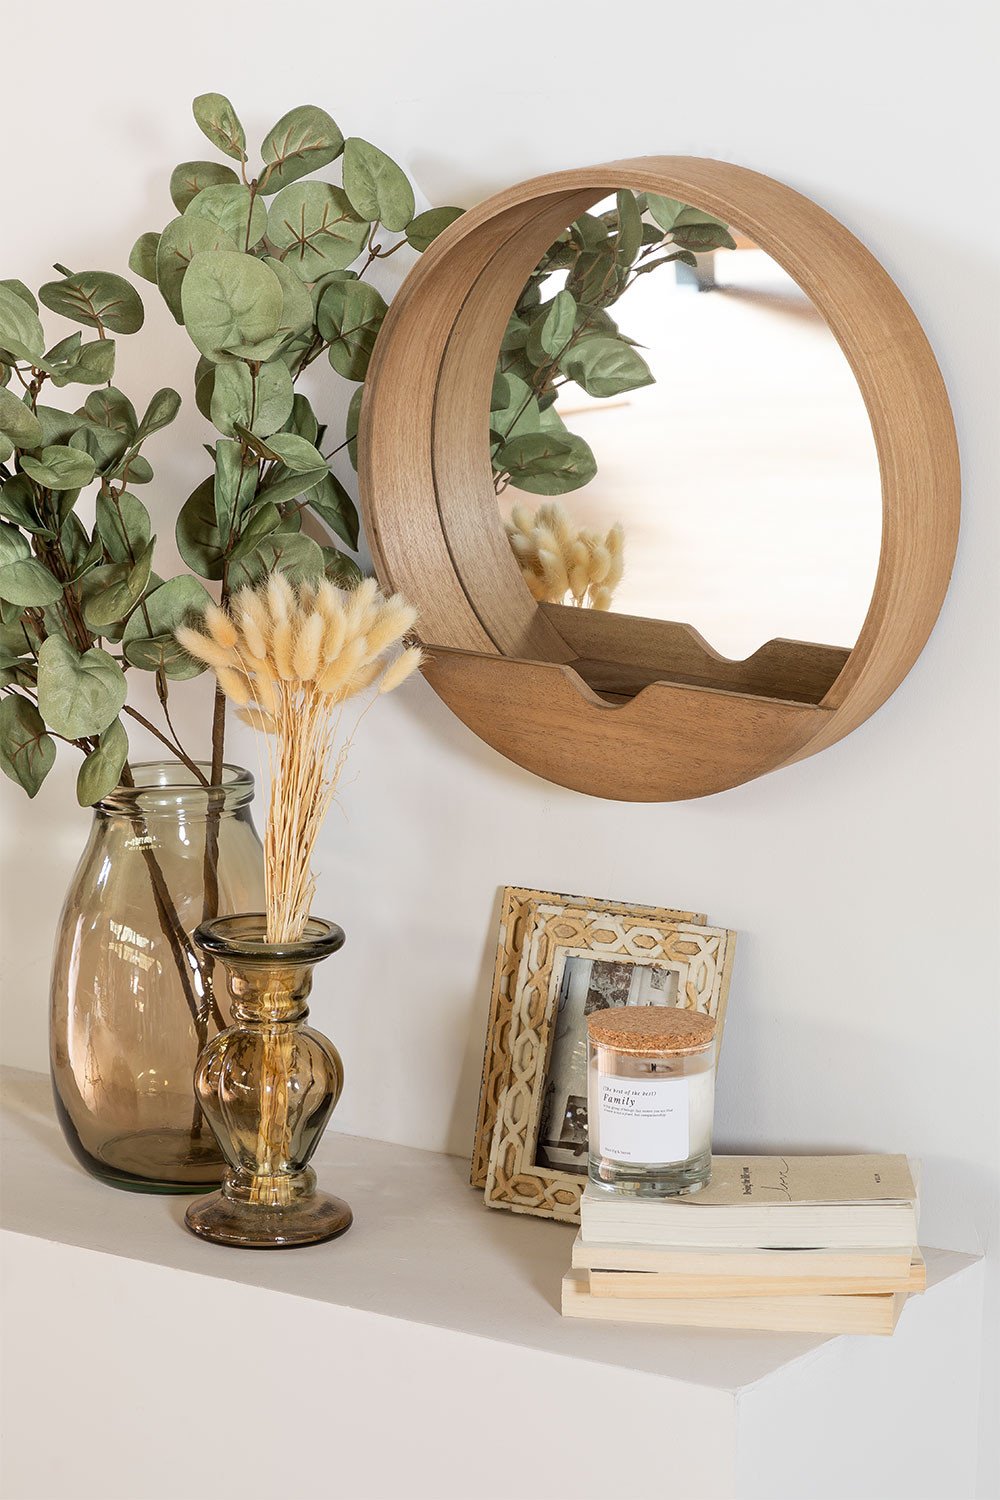 Round Wall Mirror With Wooden Shelf, Wooden Round Mirror With Shelf